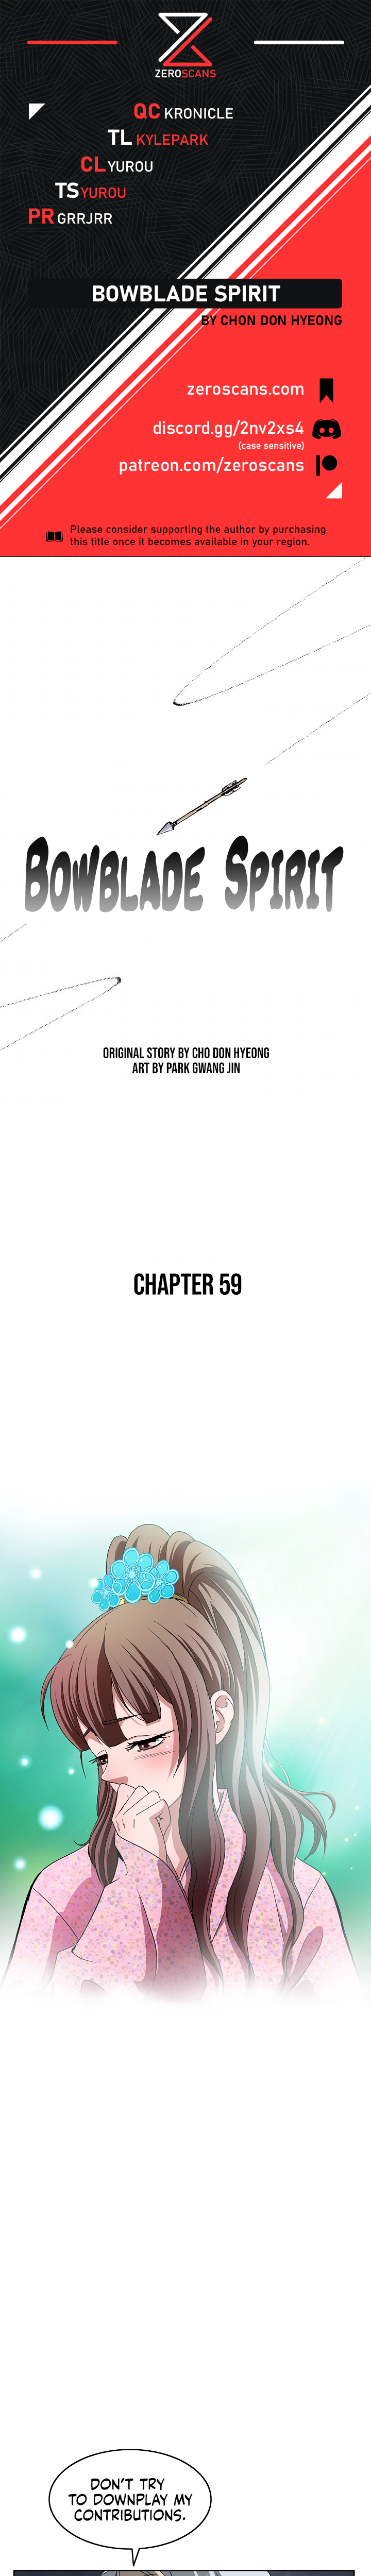 Bowblade Spirit - Chapter 3747 - Image 1